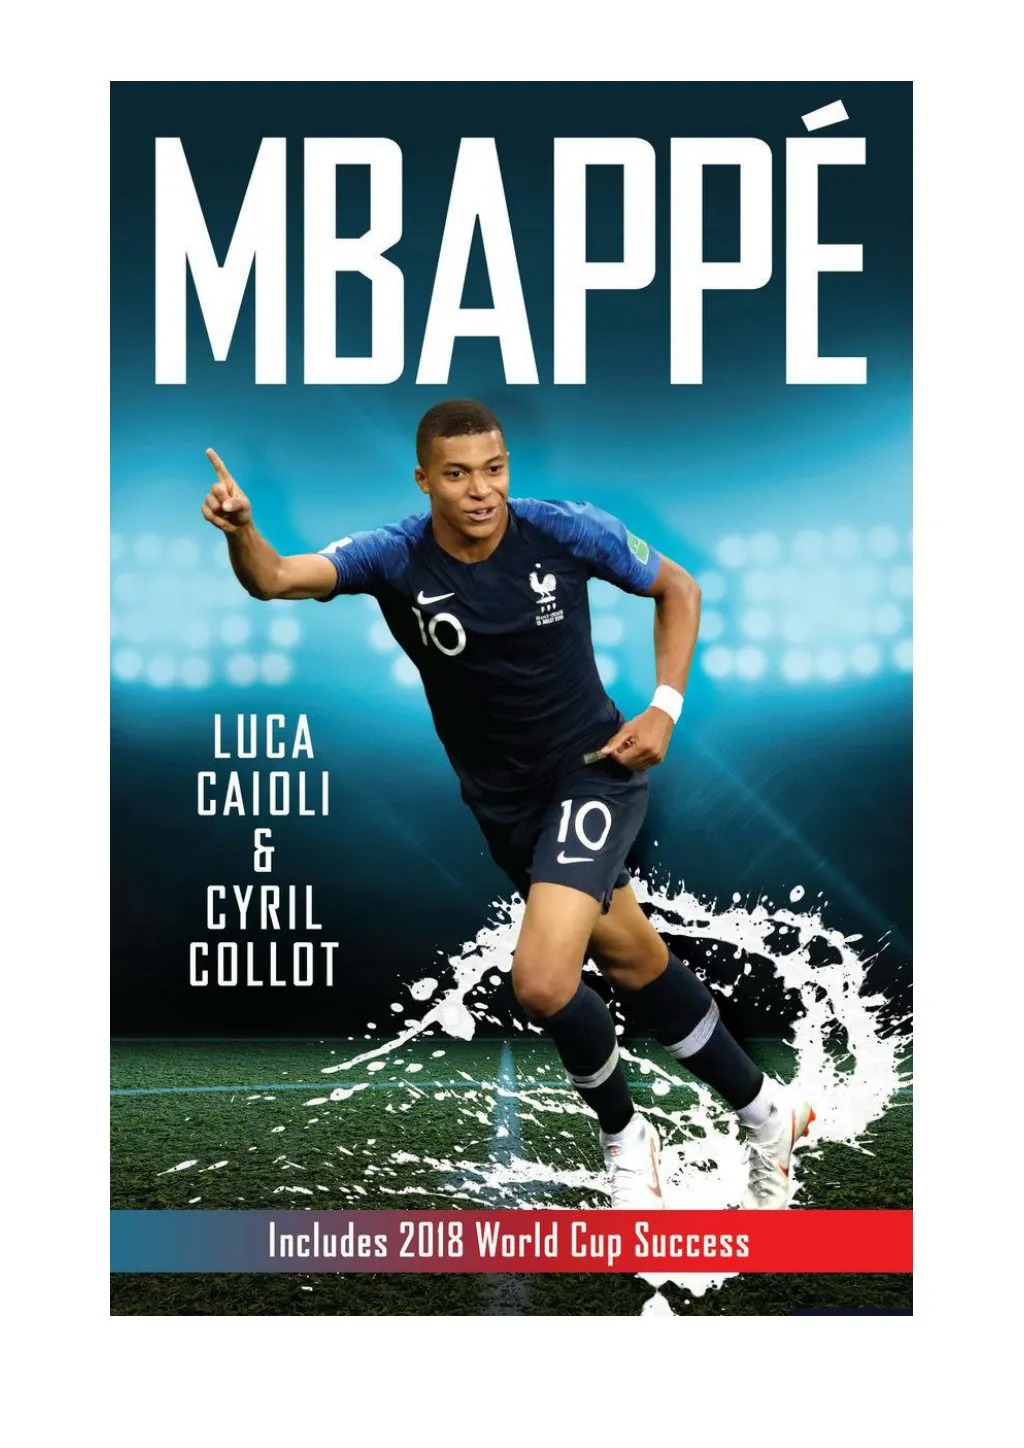 Mbappé Le Petit Prince Cyril Collot PPT - [PDF] Mbappé by Luca Caioli & Cyril Collot PowerPoint